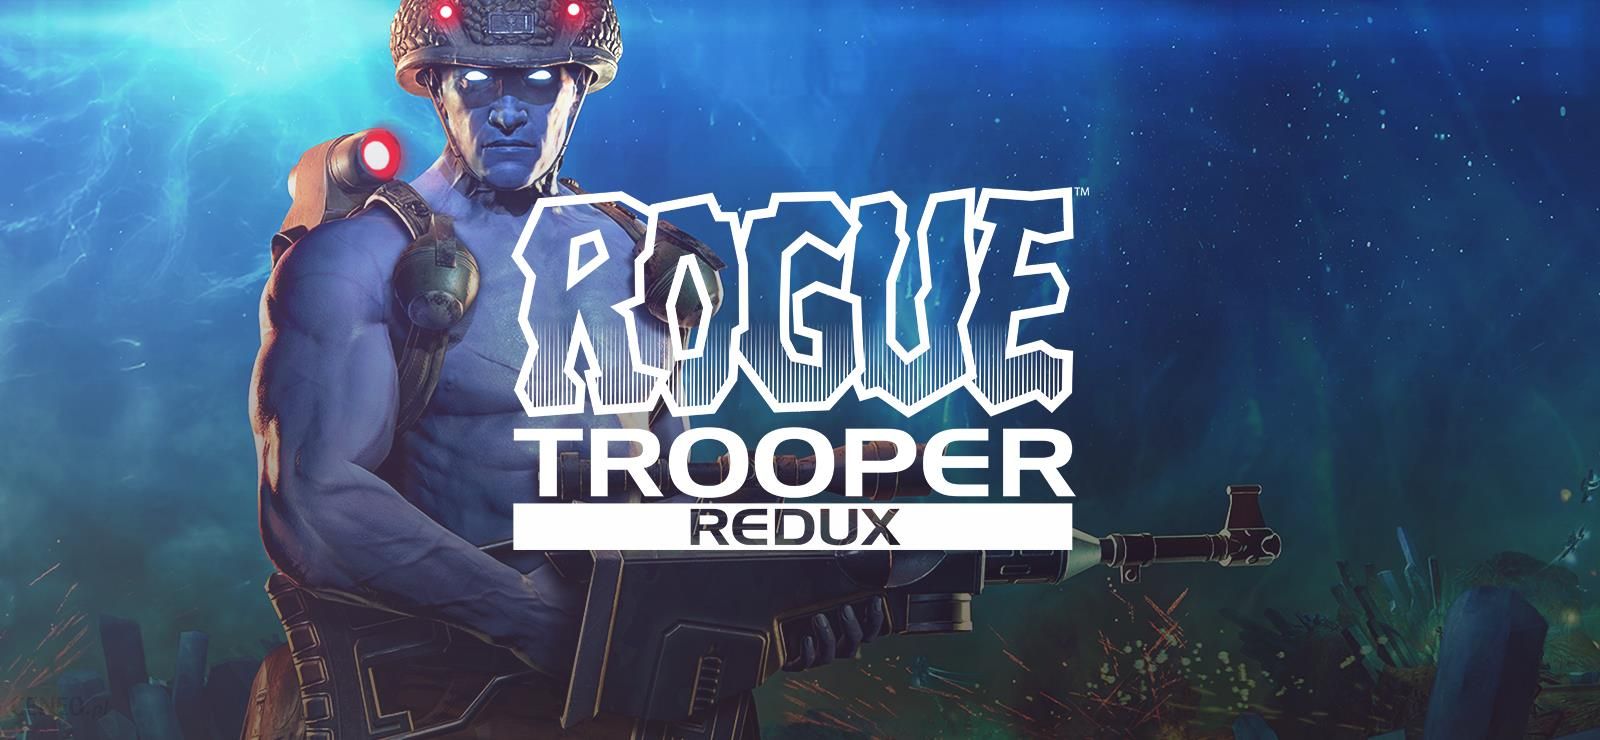 Trooper redux. Rogue Trooper. Rogue Trooper Redux. Rogue Trooper (игра, 2006). Rogue Trooper обложка.